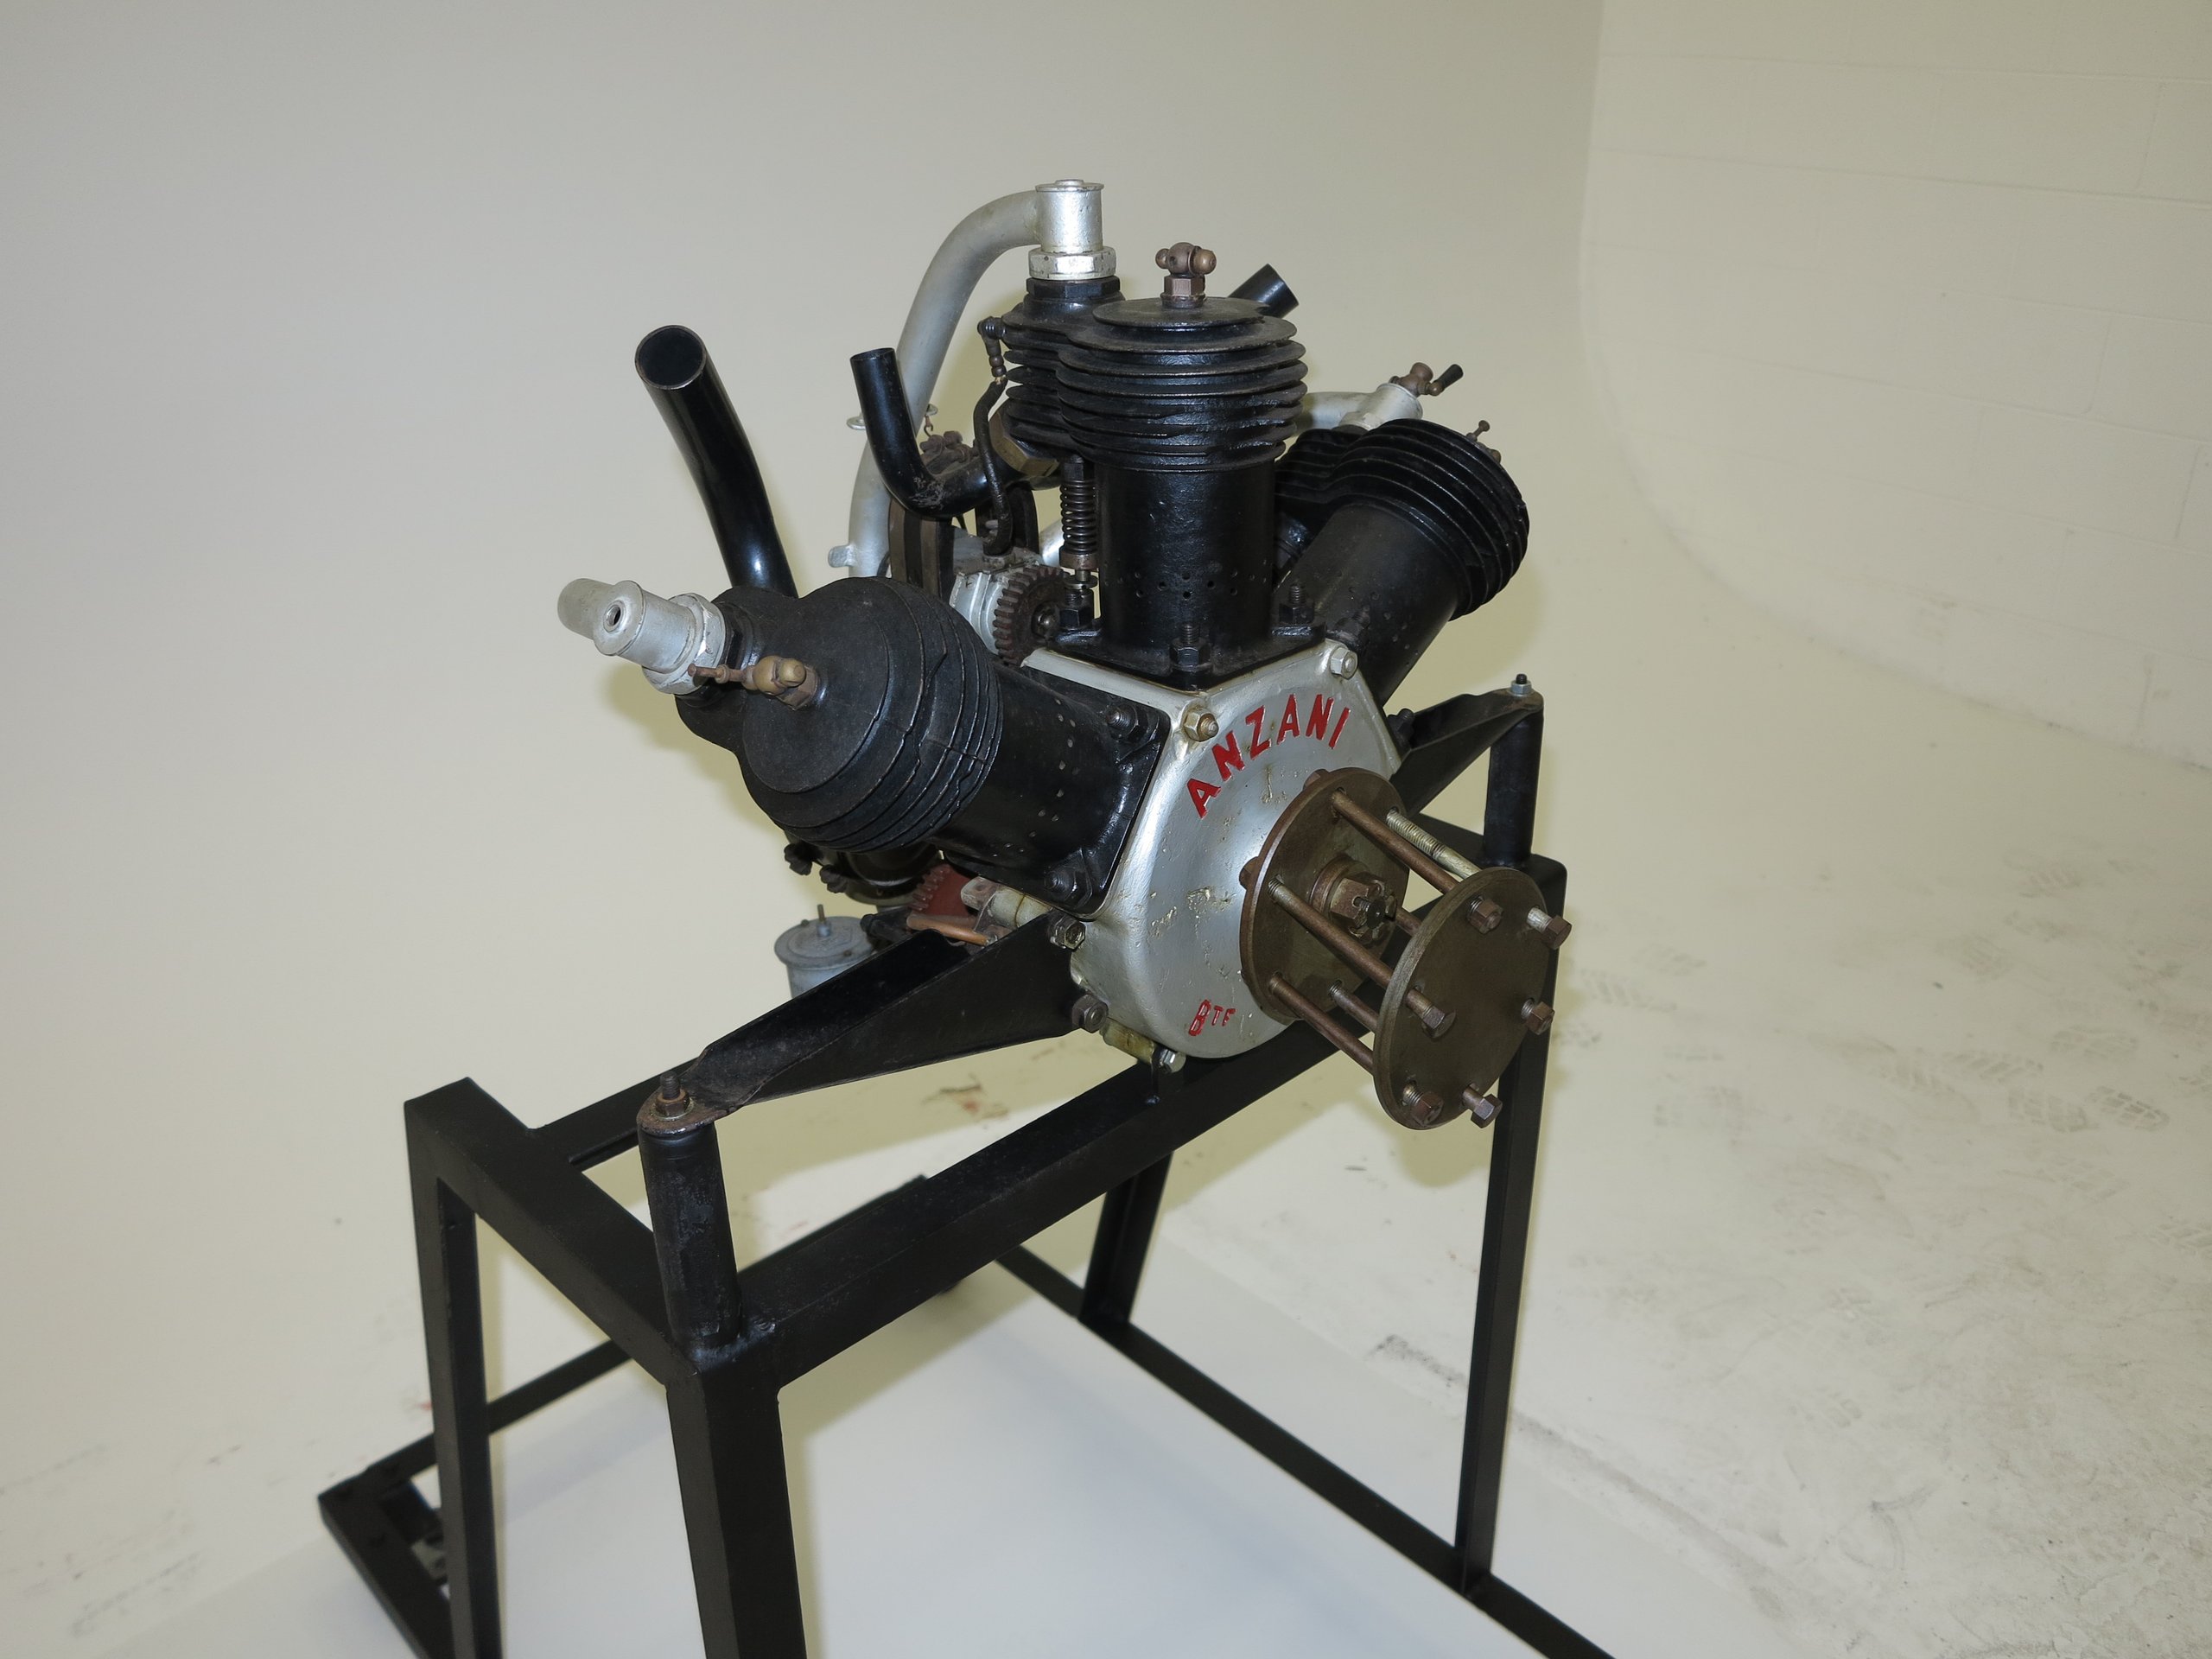 Aero engine made by Alessandro Anzani